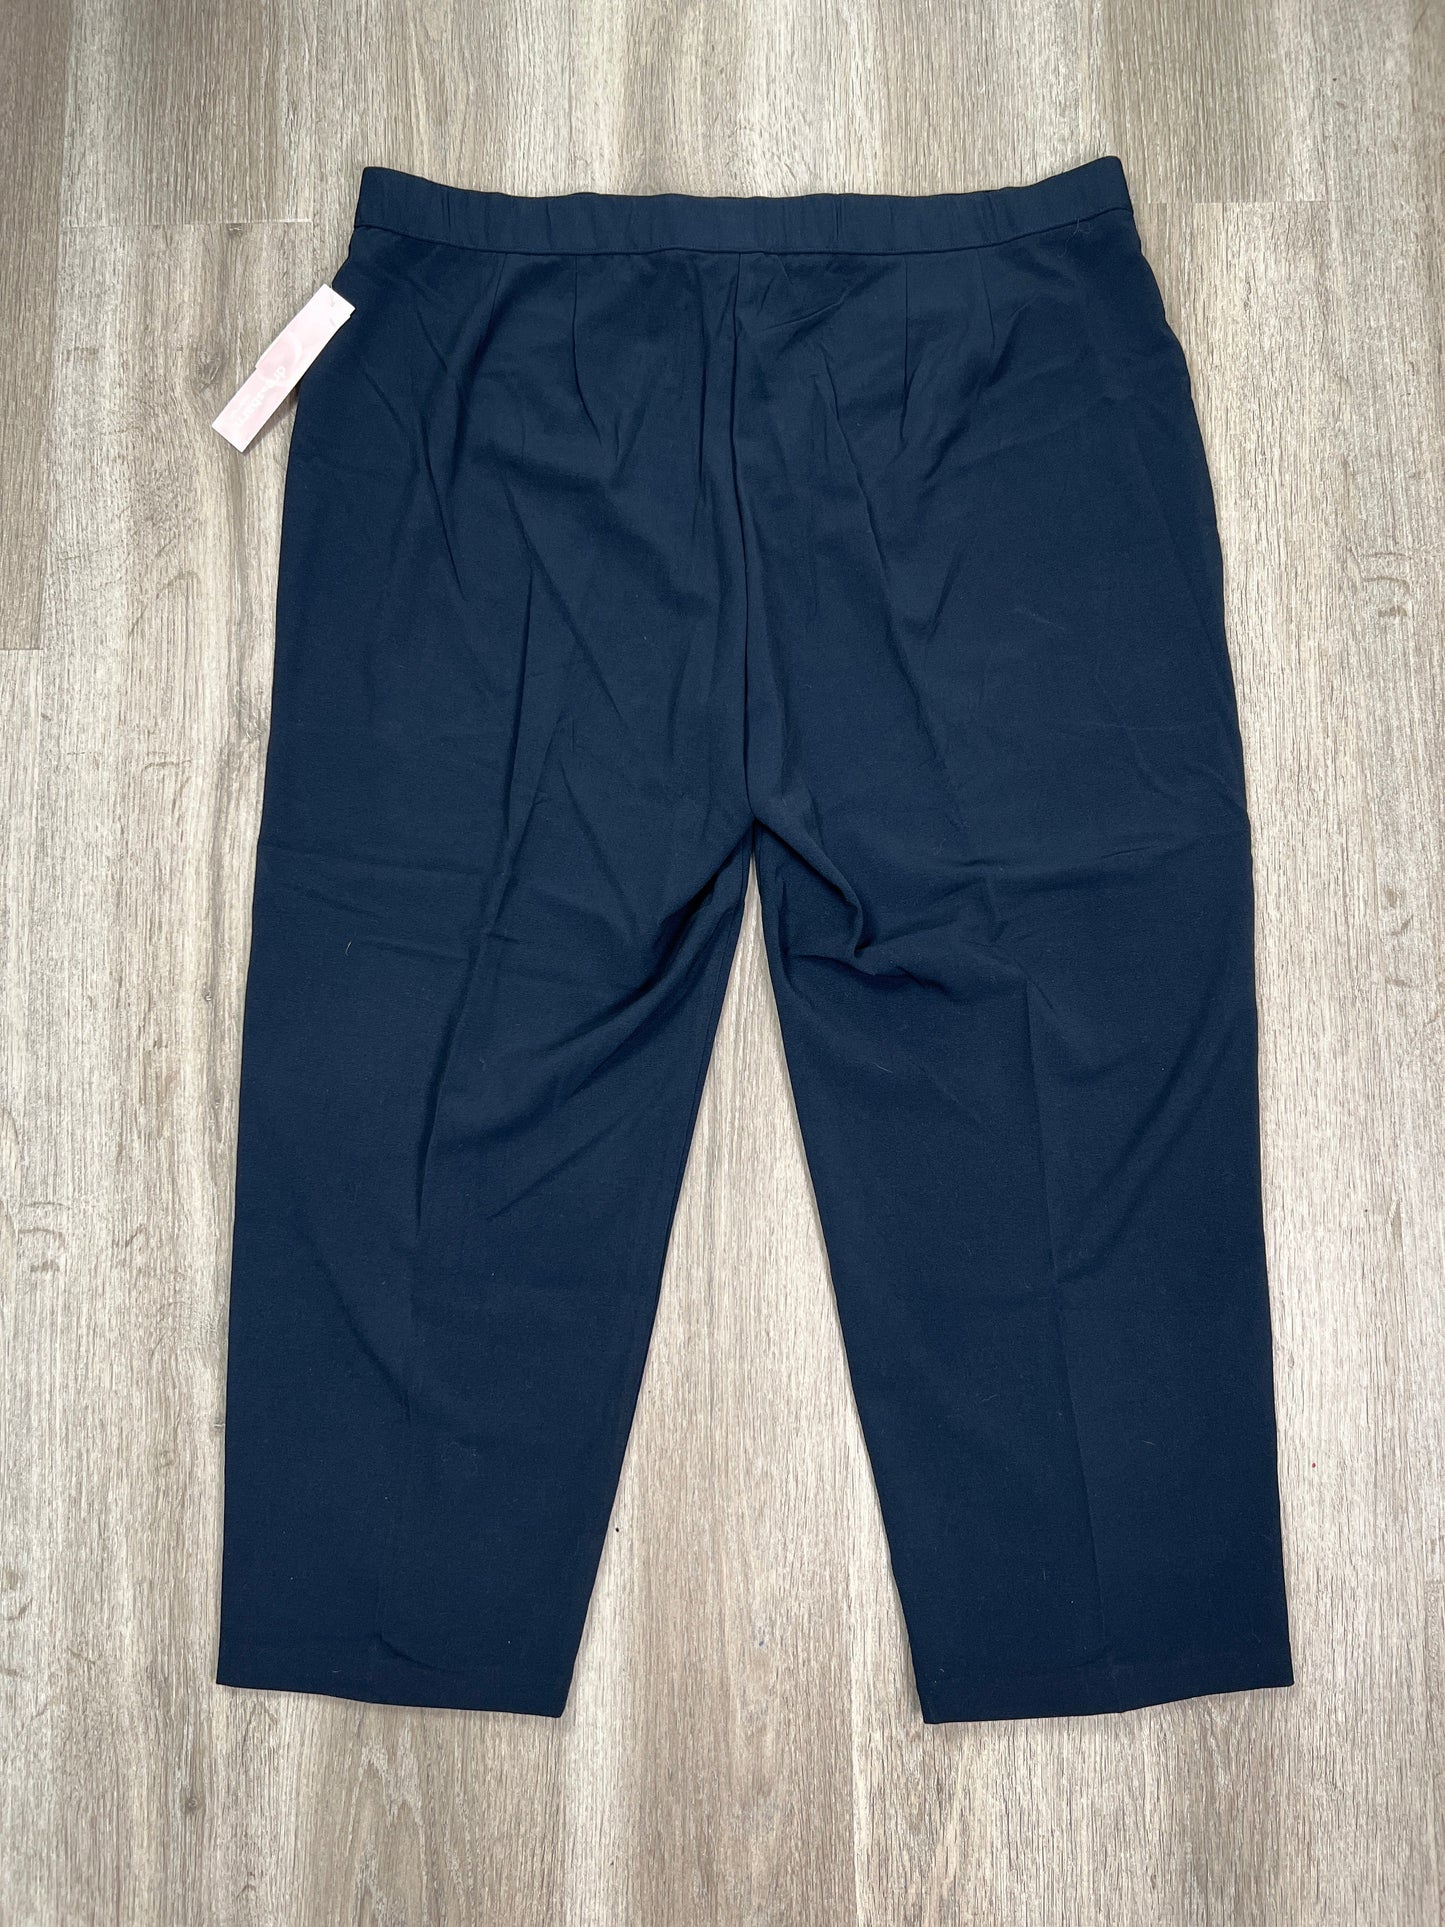 Navy Pants Cropped Dressbarn, Size Xxl